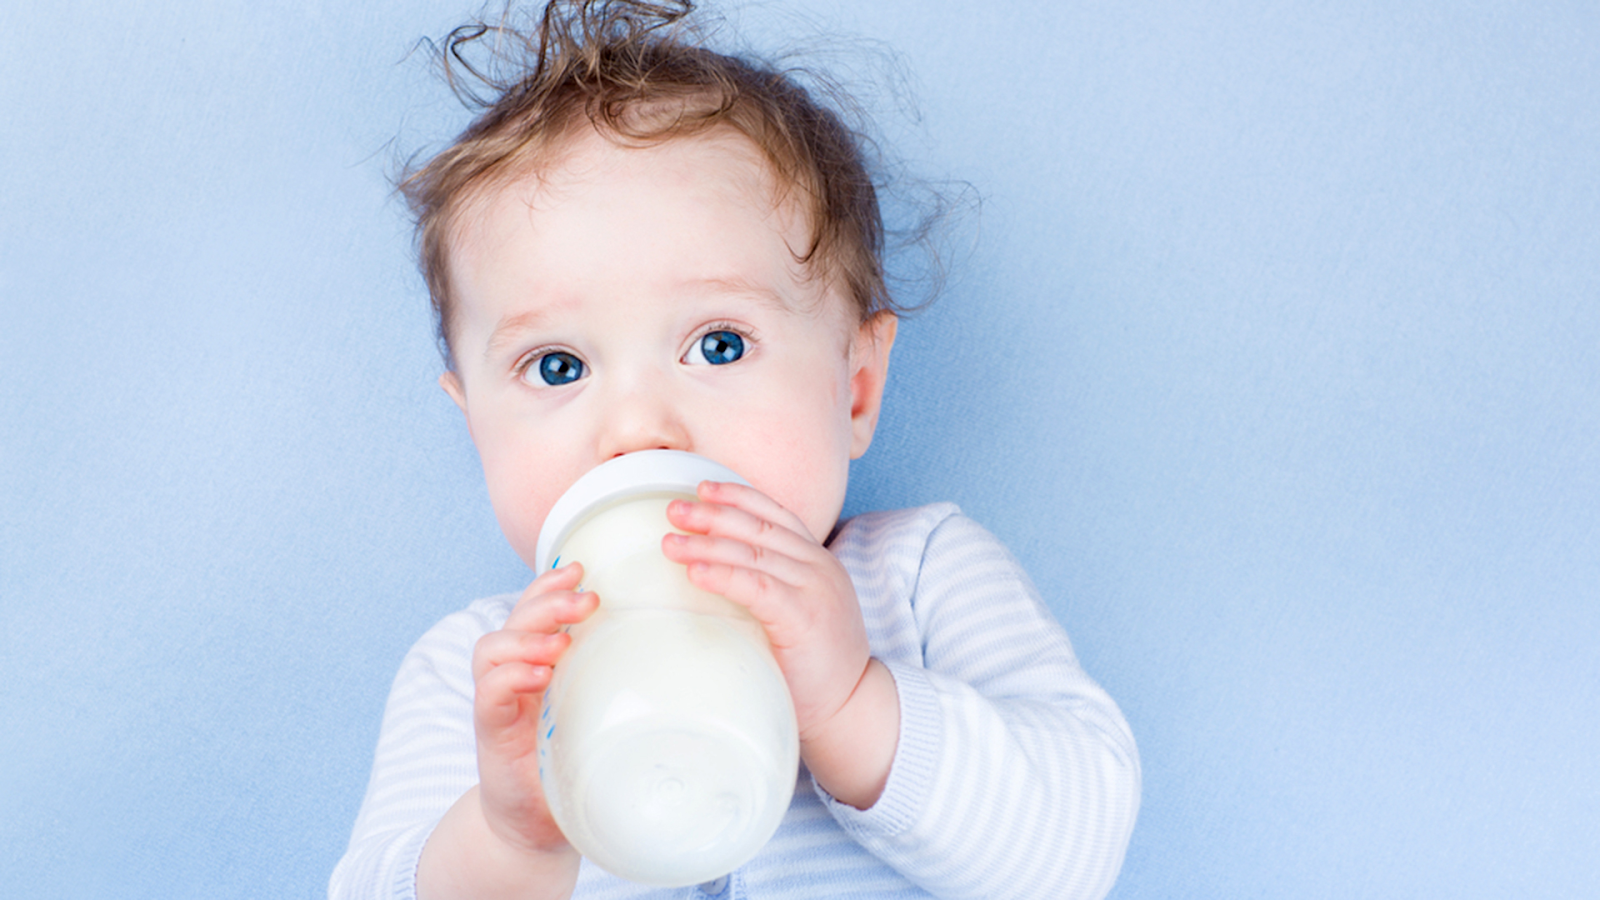 mẹo chọn sữa tốt cho hệ tiêu hóa trẻ